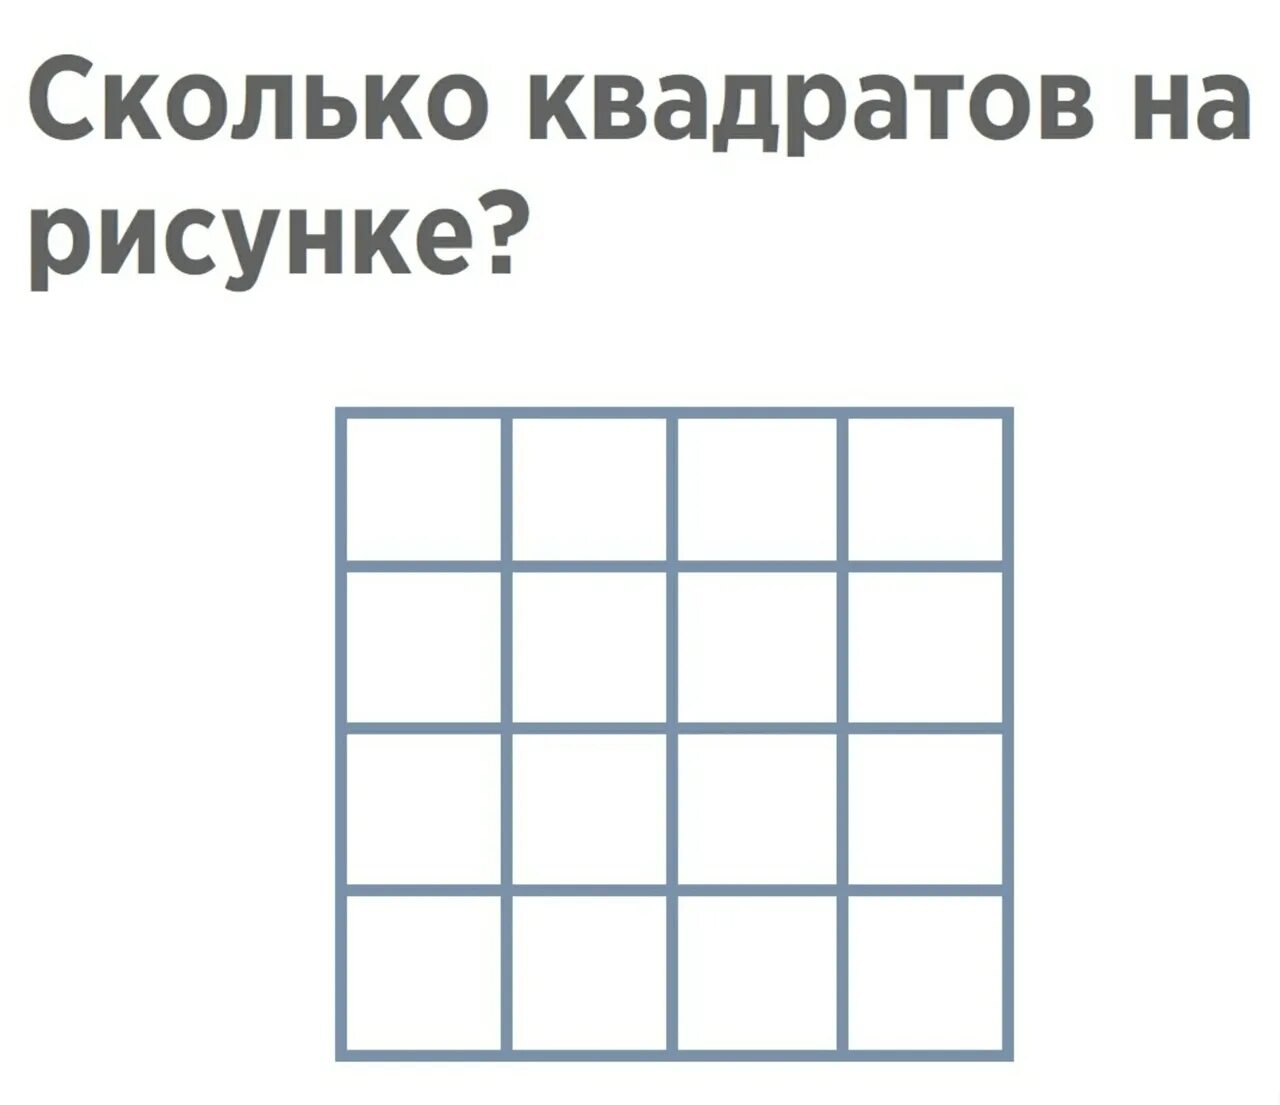 Сколько квадратов на человека для пособий. Сколько квадратов изображено на рисунке. Сколько квадратов на рисунке 5. Посчитай сколько квадратов изображено на рисунке. Сколько квадратов вы видите.